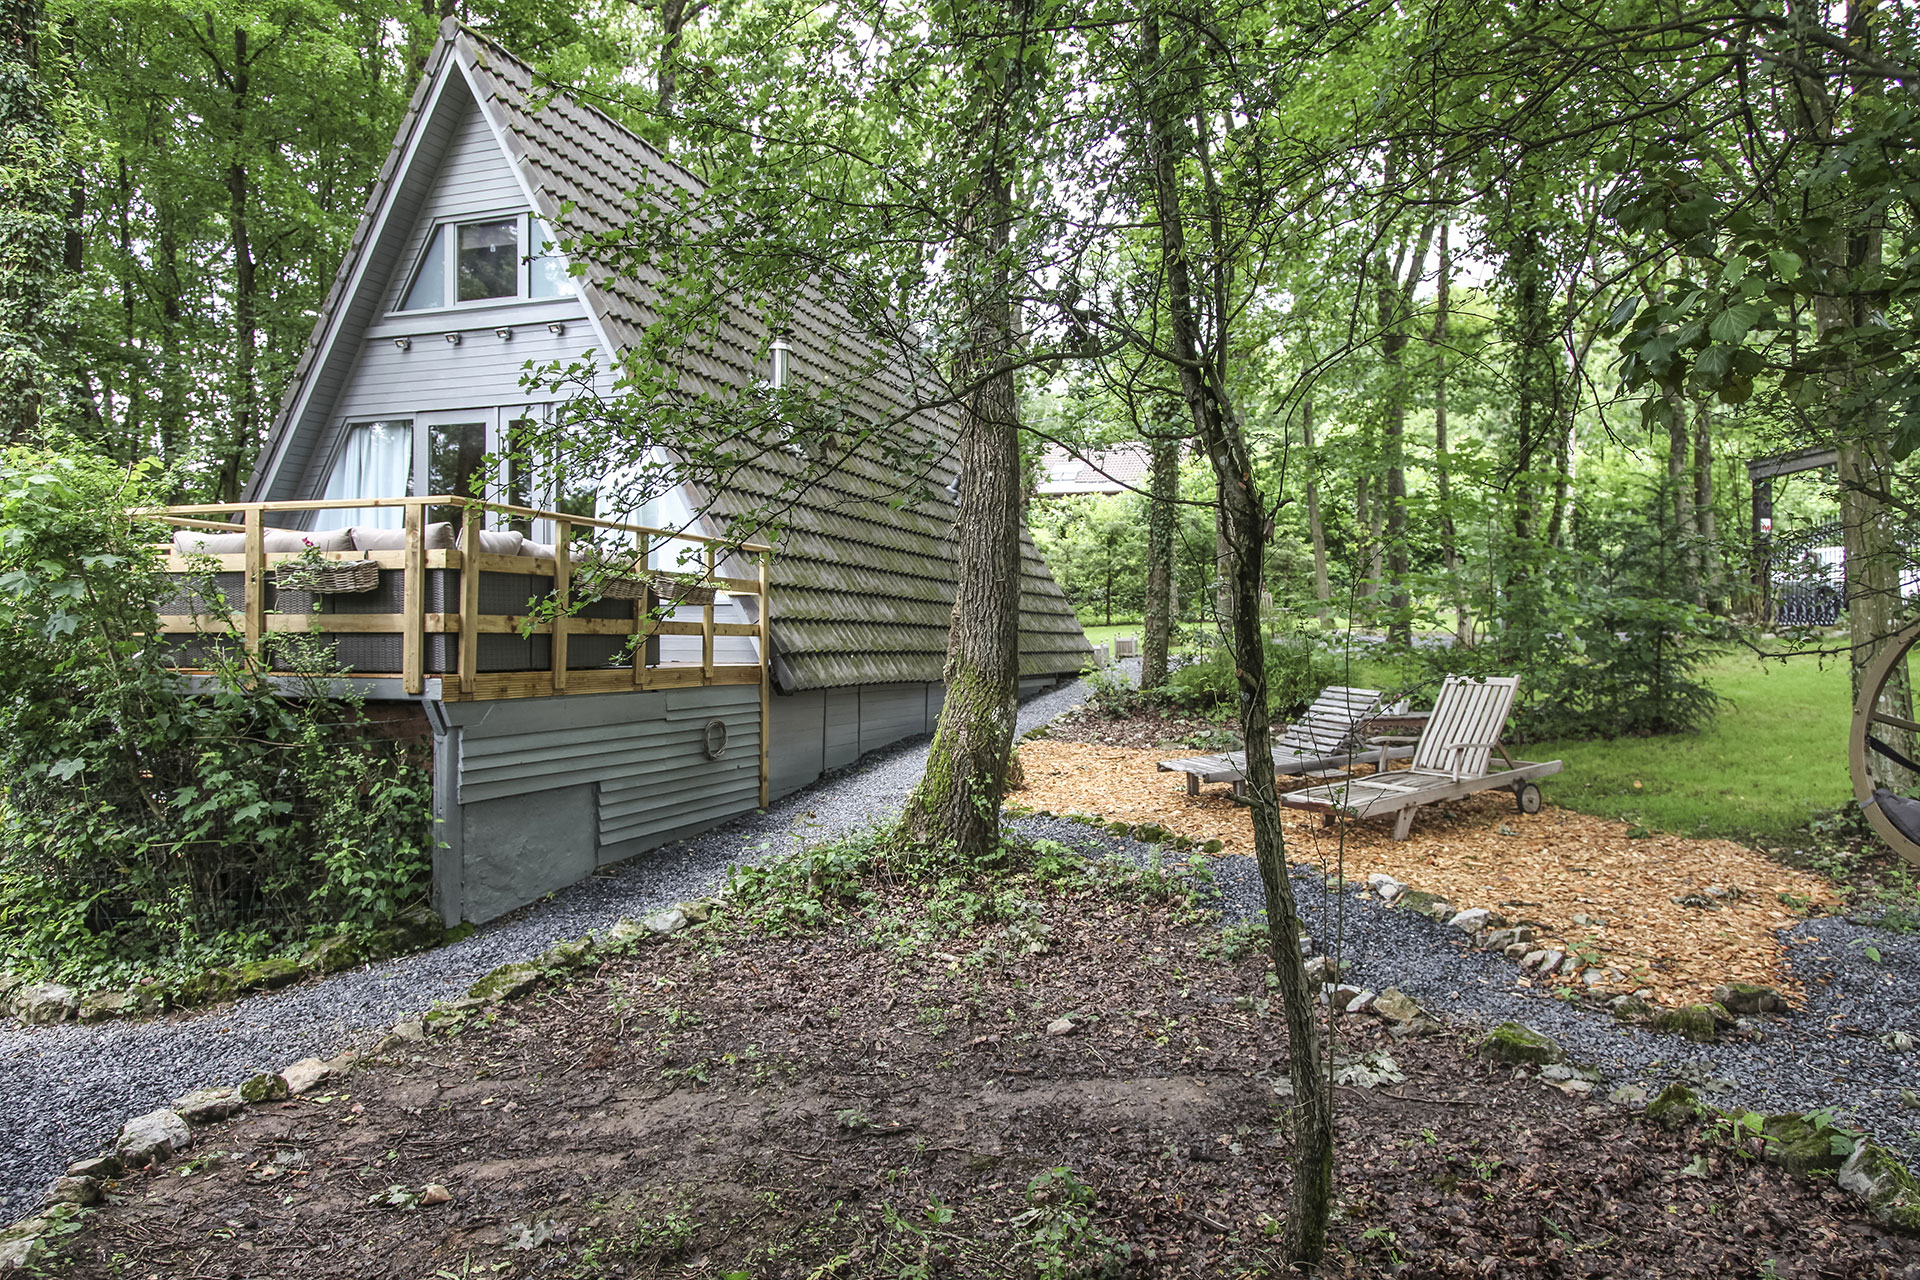 Ardennes-Etape - maison de vacances - Ardenne belge - cottages - chalets - bungalows - gîtes ruraux - hébergements insolites - cabanes - maisons de charme